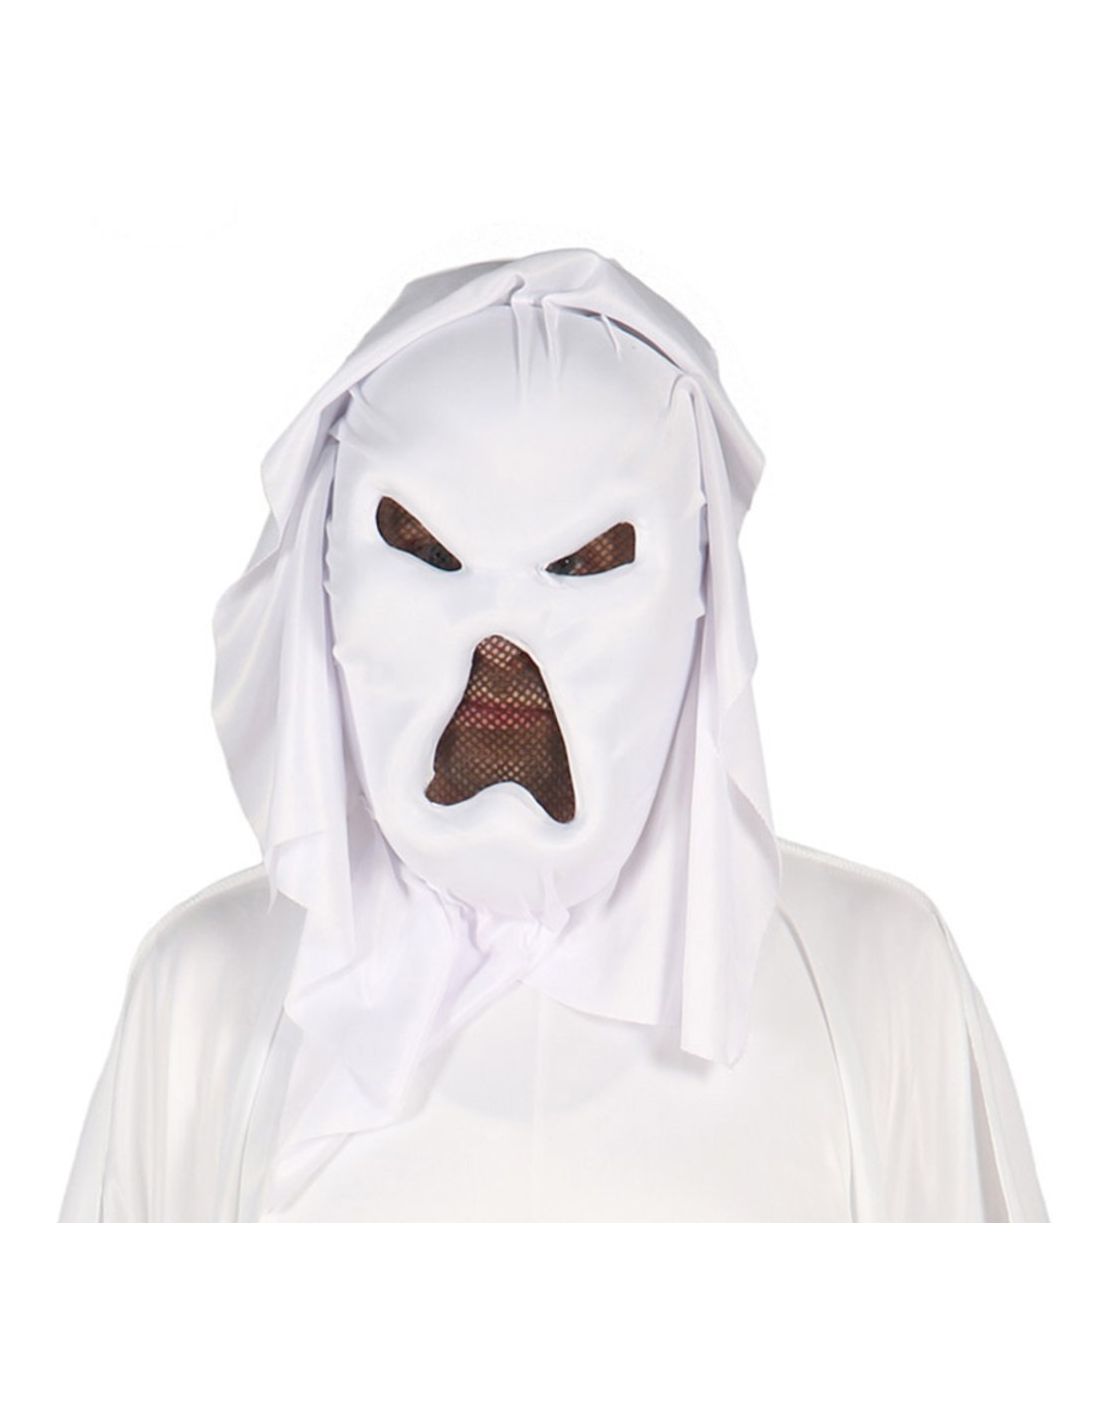 genio Persona responsable abortar Mascara o Careta de Fantasma | Tienda de Disfraces Online | Mercad...